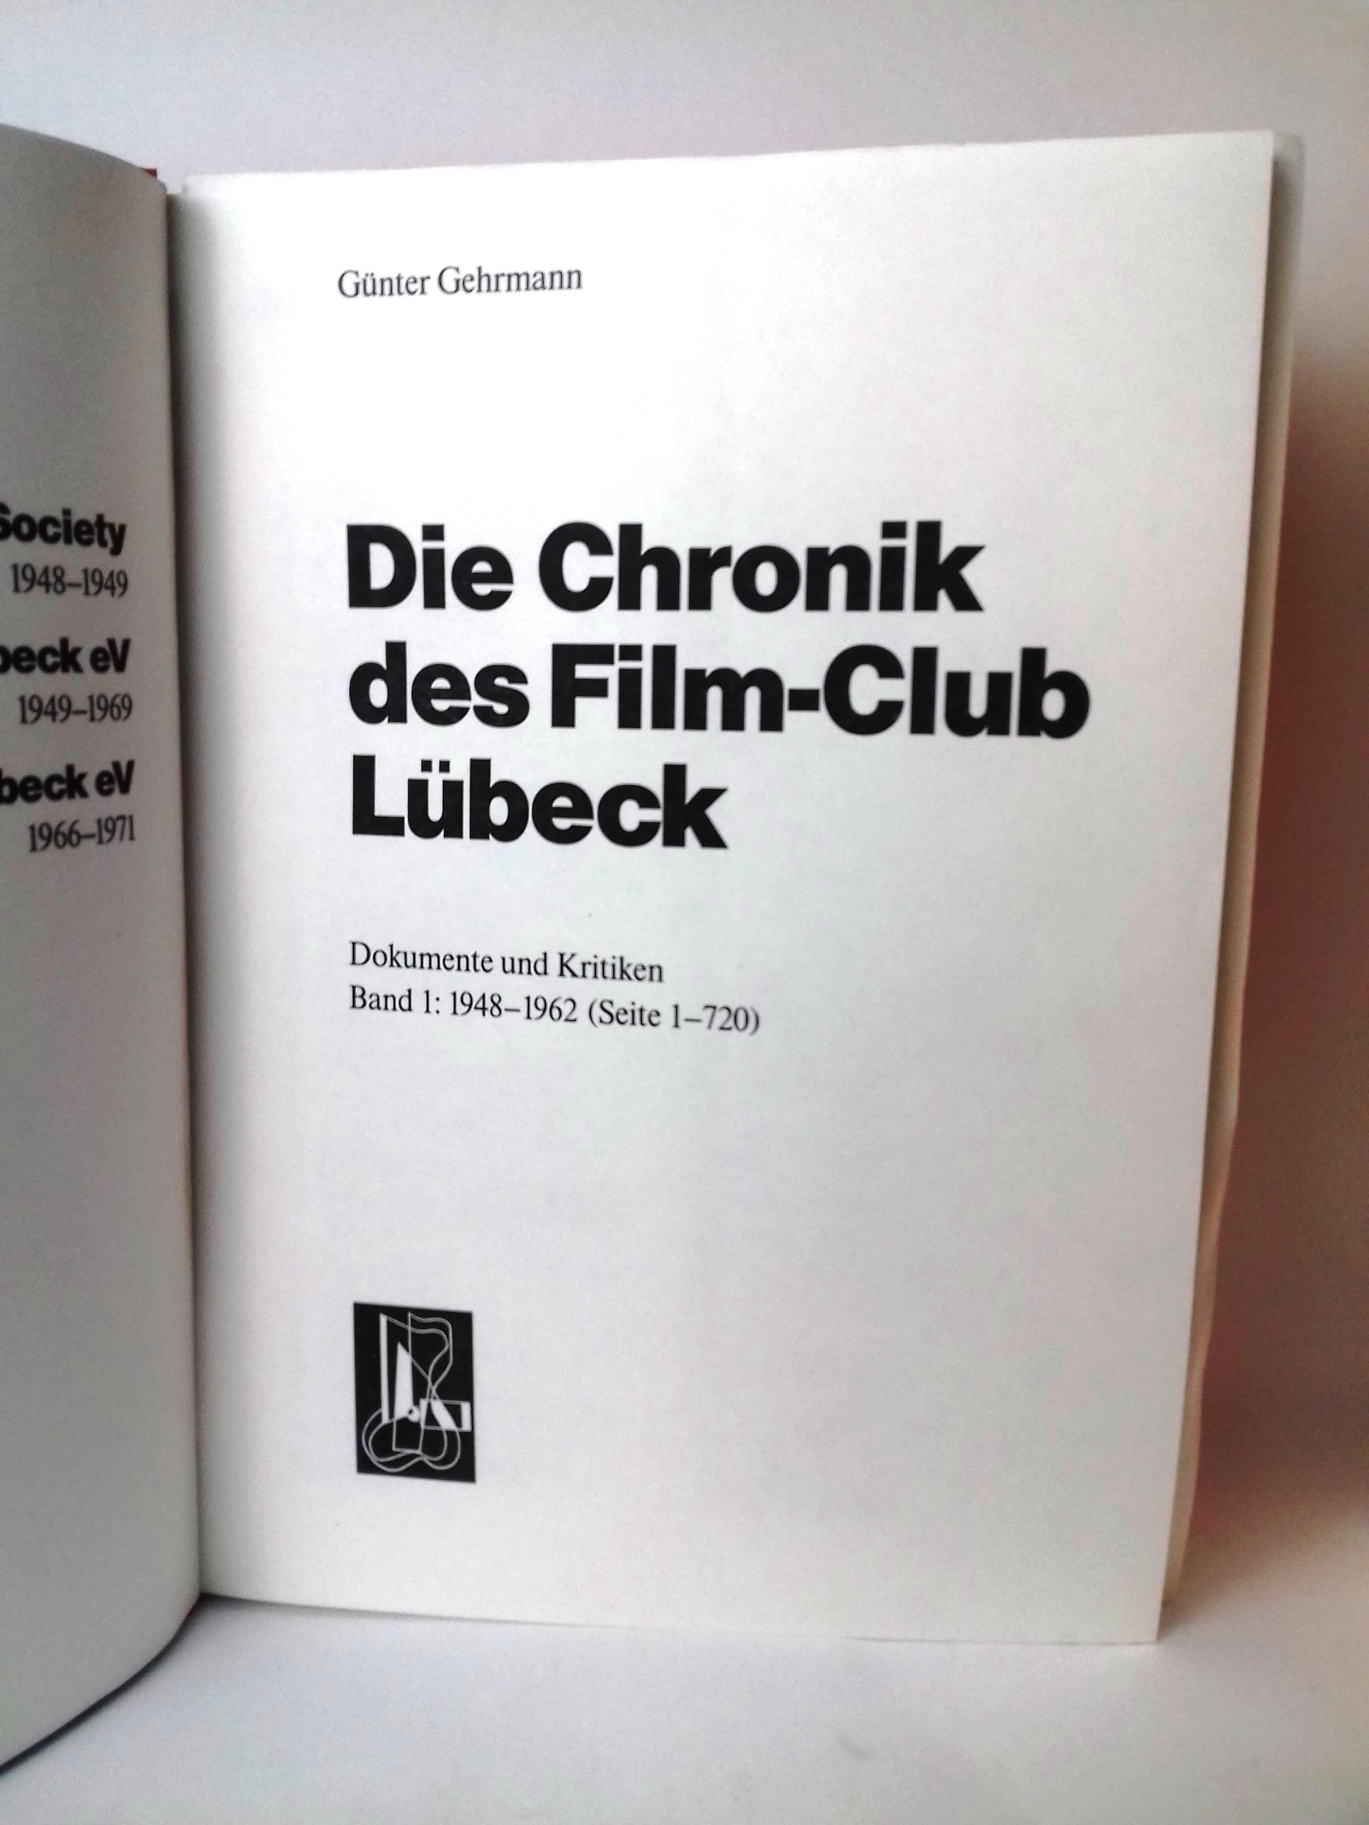 Gehrmann, Günter: Die Chronik des Film-Clubs Lübeck Dokumente und Kritiken. Band 1: 1948-1962. Band 2: 1962-1966. Band 3: 1967-1971